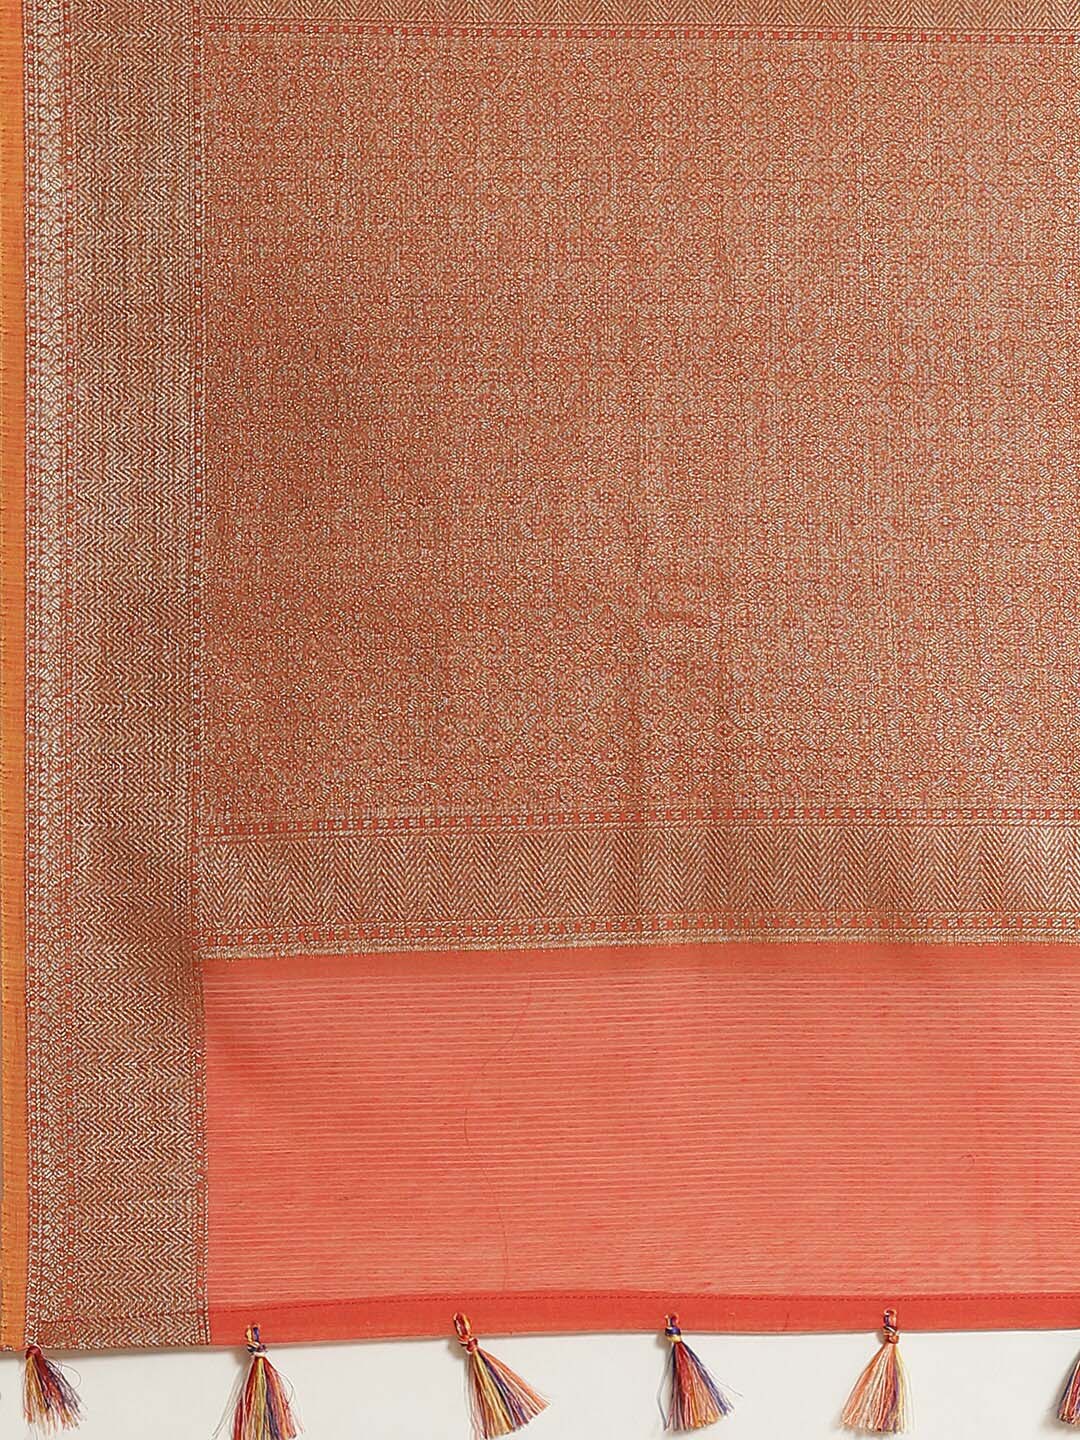 Indethnic Banarasi Rust Woven Design Work Wear Saree - Saree Detail View